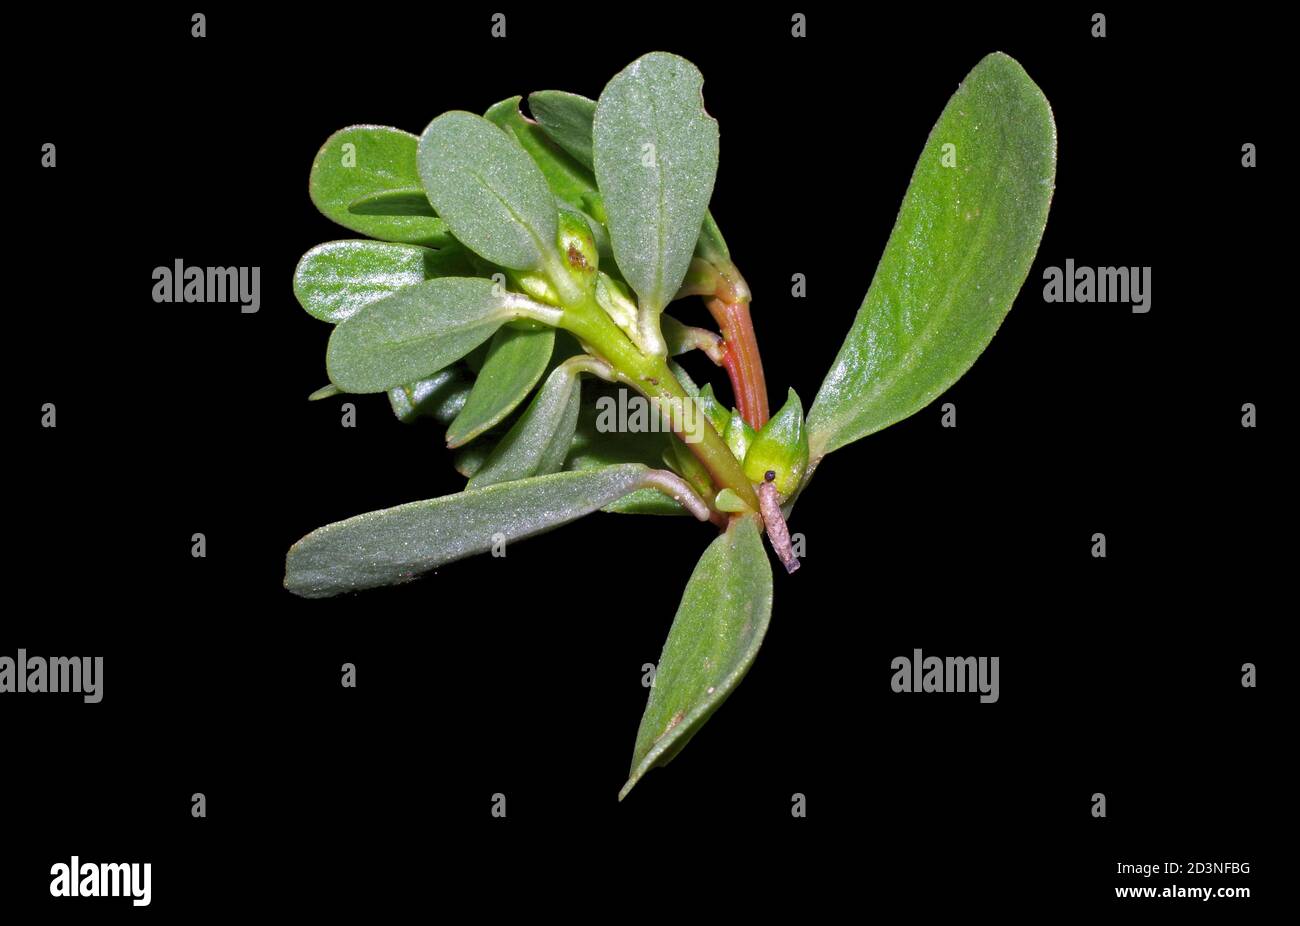 Les feuilles de la Purslane (portulaca oleracea) sont rapprochées Banque D'Images